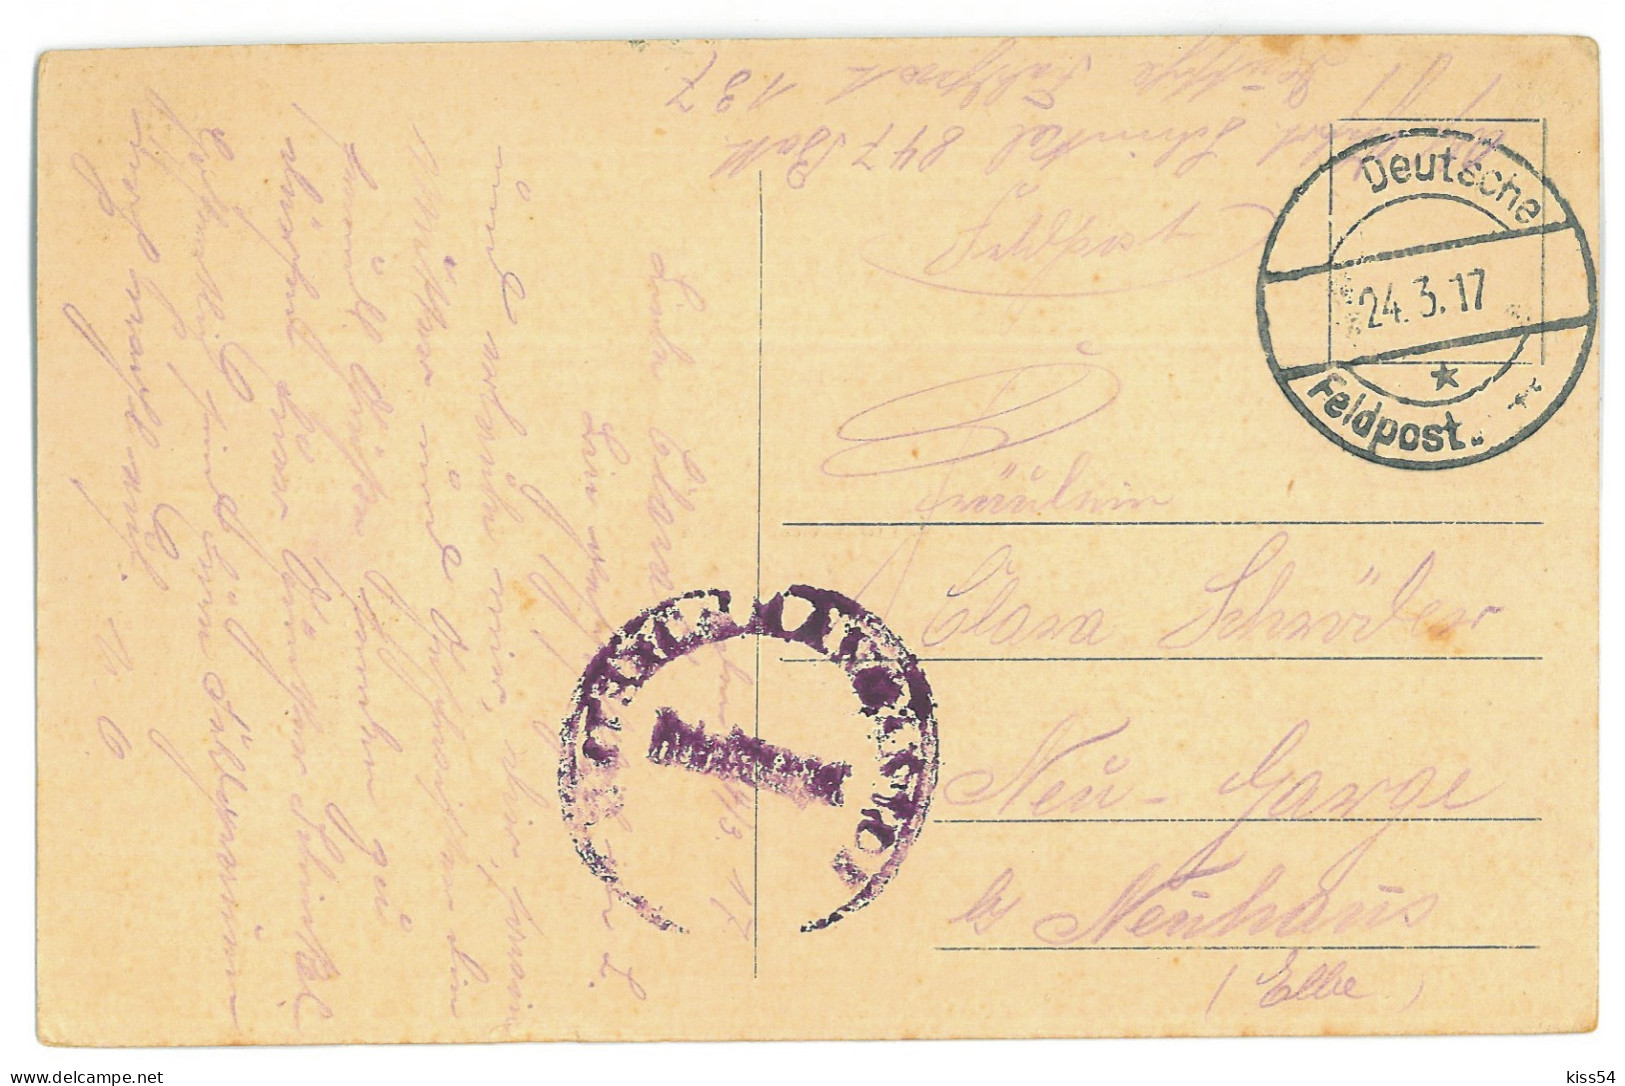 BL 31 - 24499 LIDA, Belarus - Old Postcard, CENSOR - Used - 1917 - Weißrussland